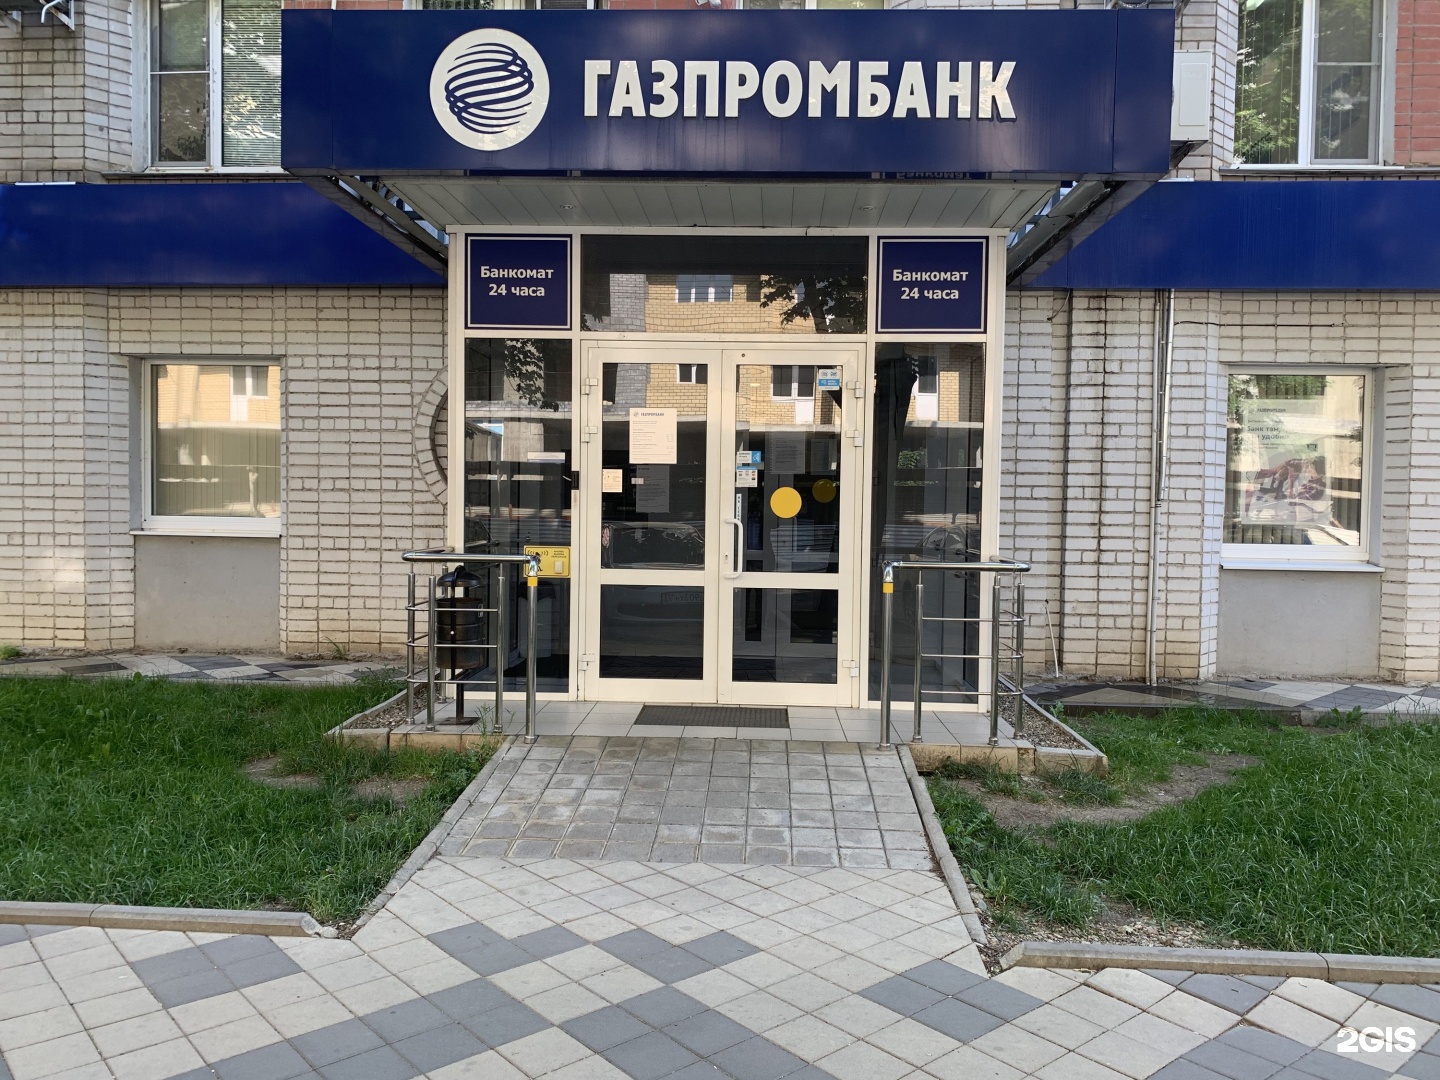 Газпромбанк краснодар кредит взять пересчитать страховку в банке по кредиту